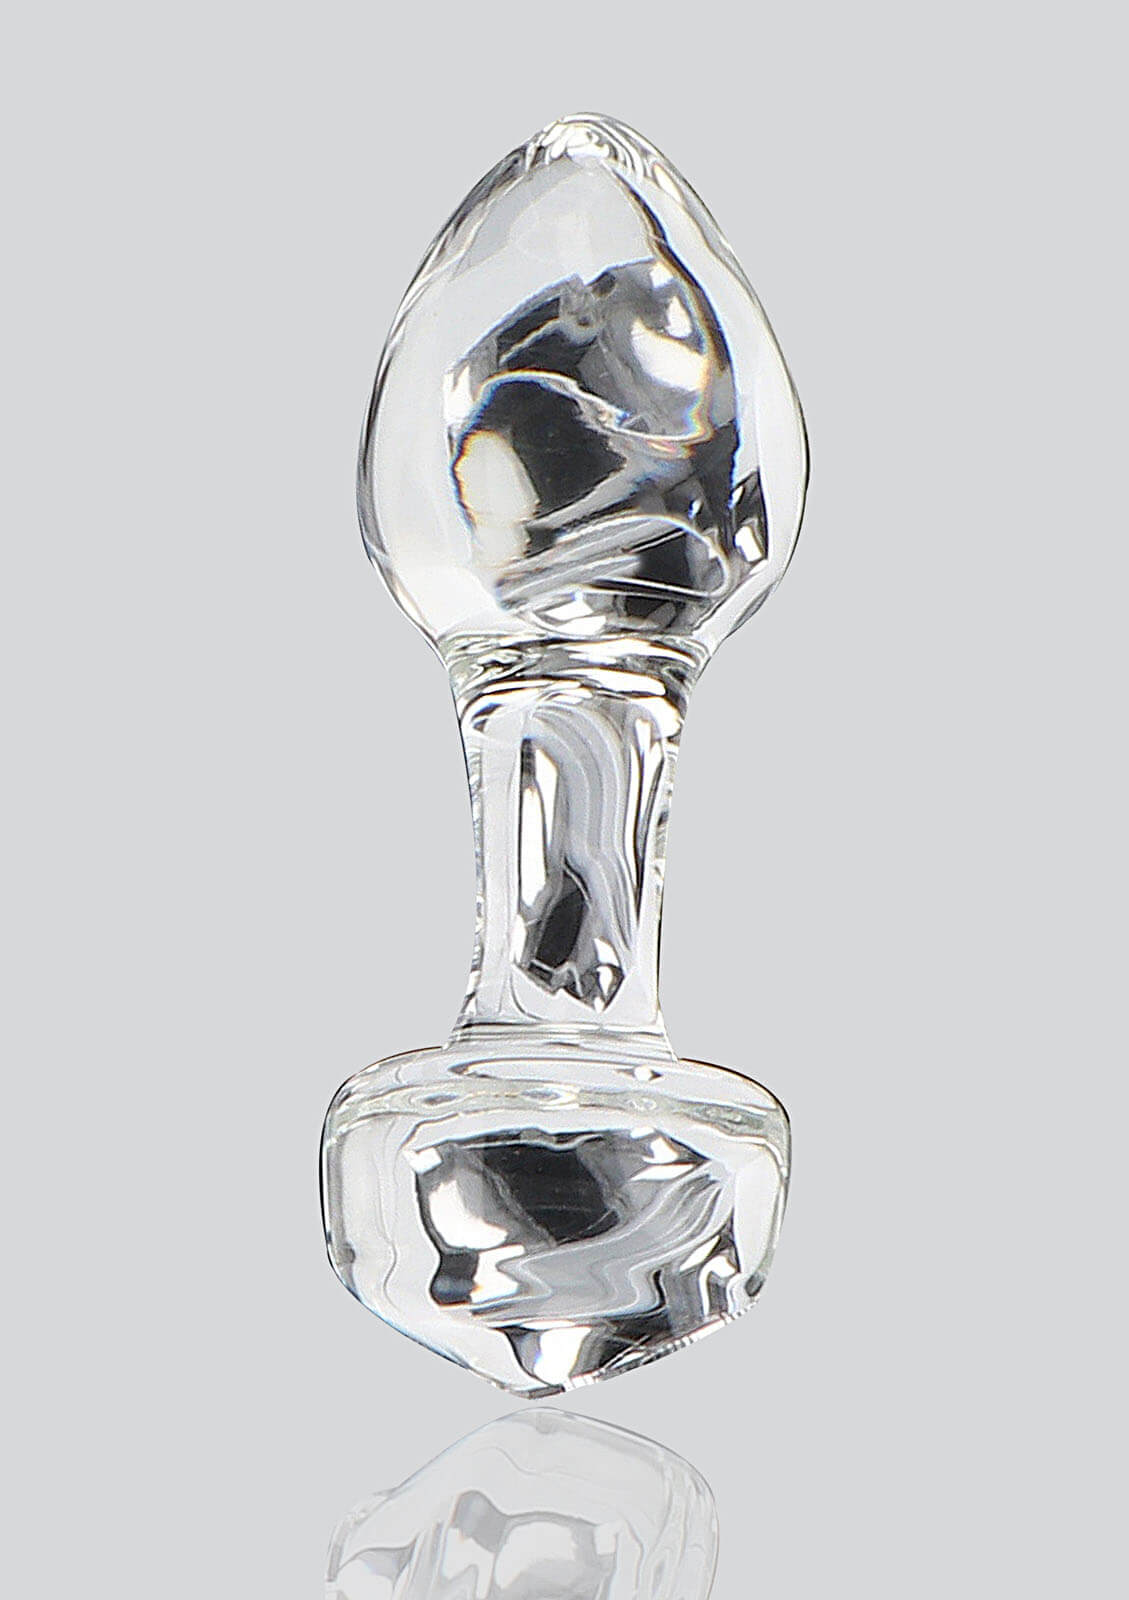 ToyJoy Glass Worxx Stargazer (9 cm)